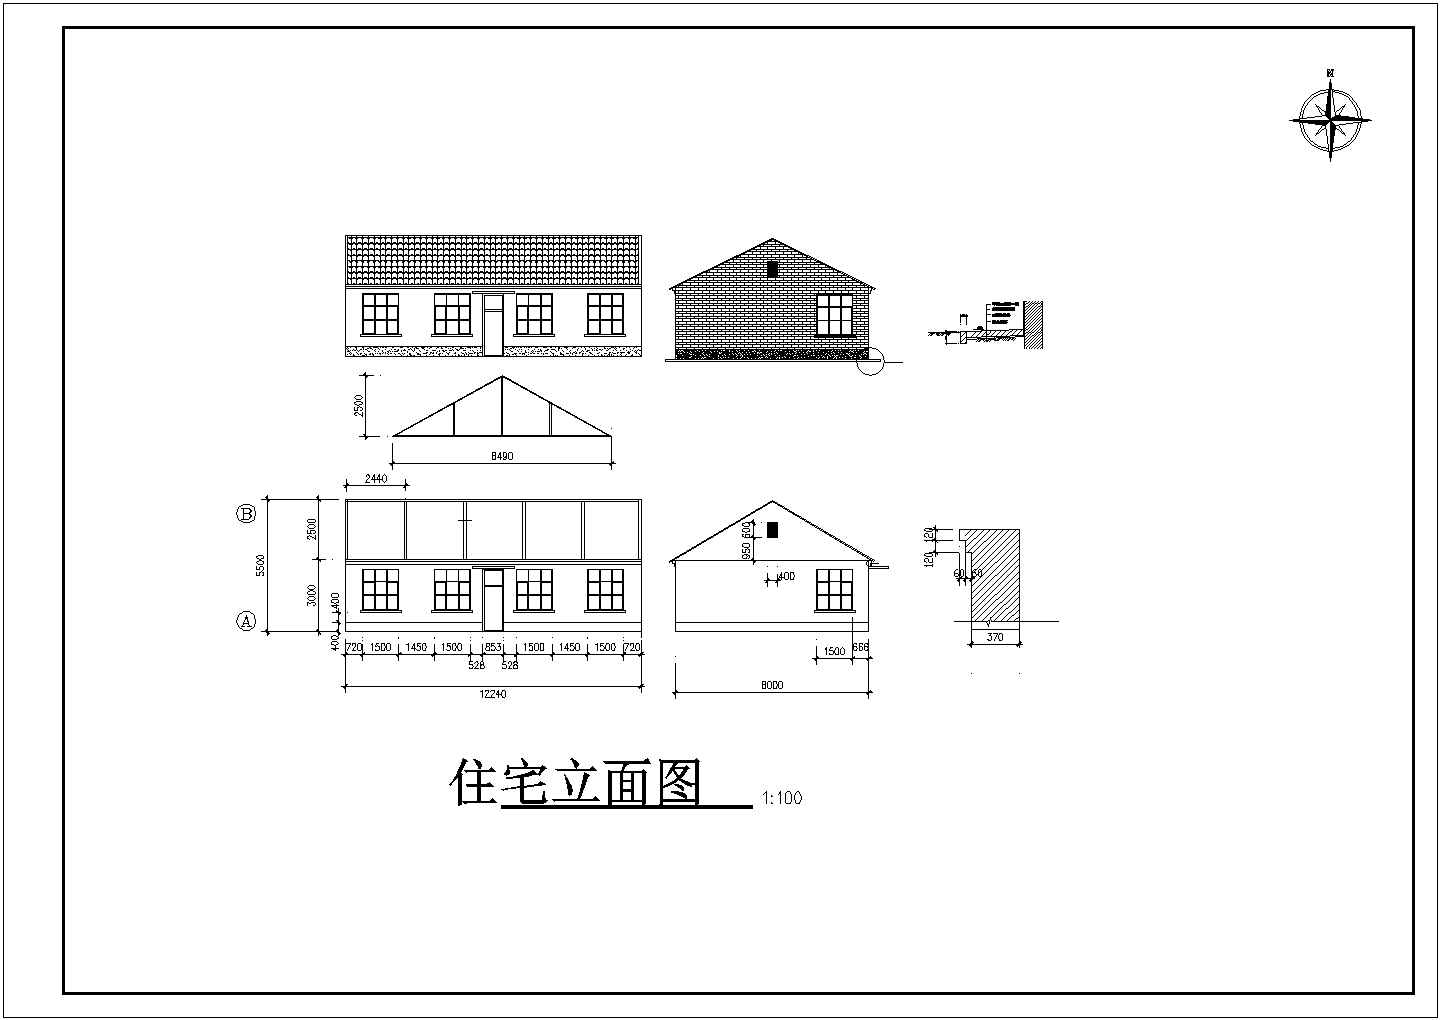 呼和浩特市某养殖场1600平米单层钢结构牧场建筑设计CAD图纸